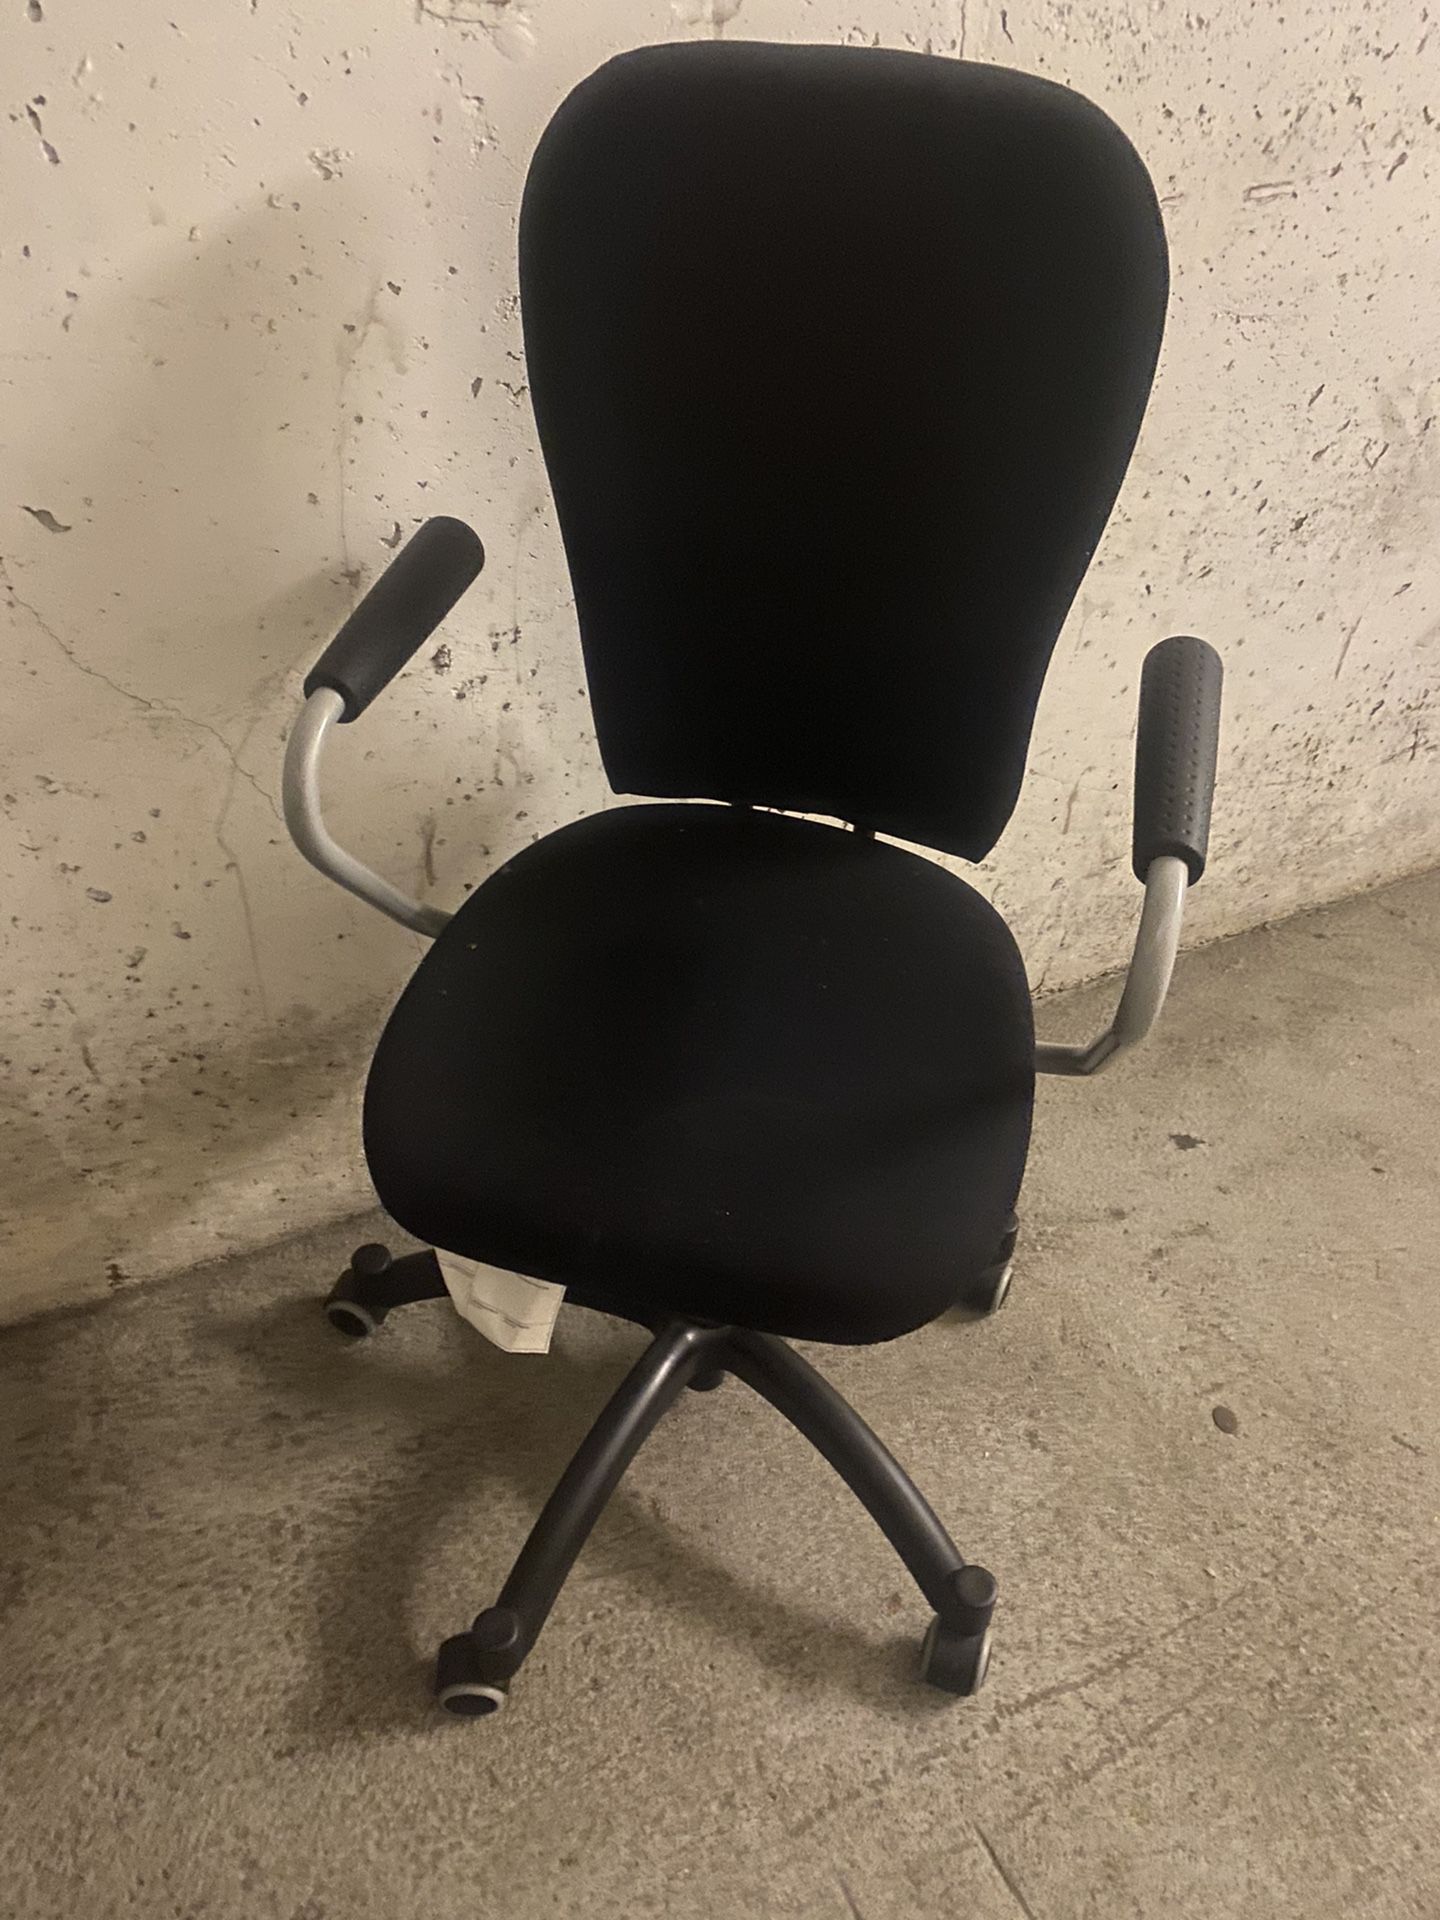 Chair $30